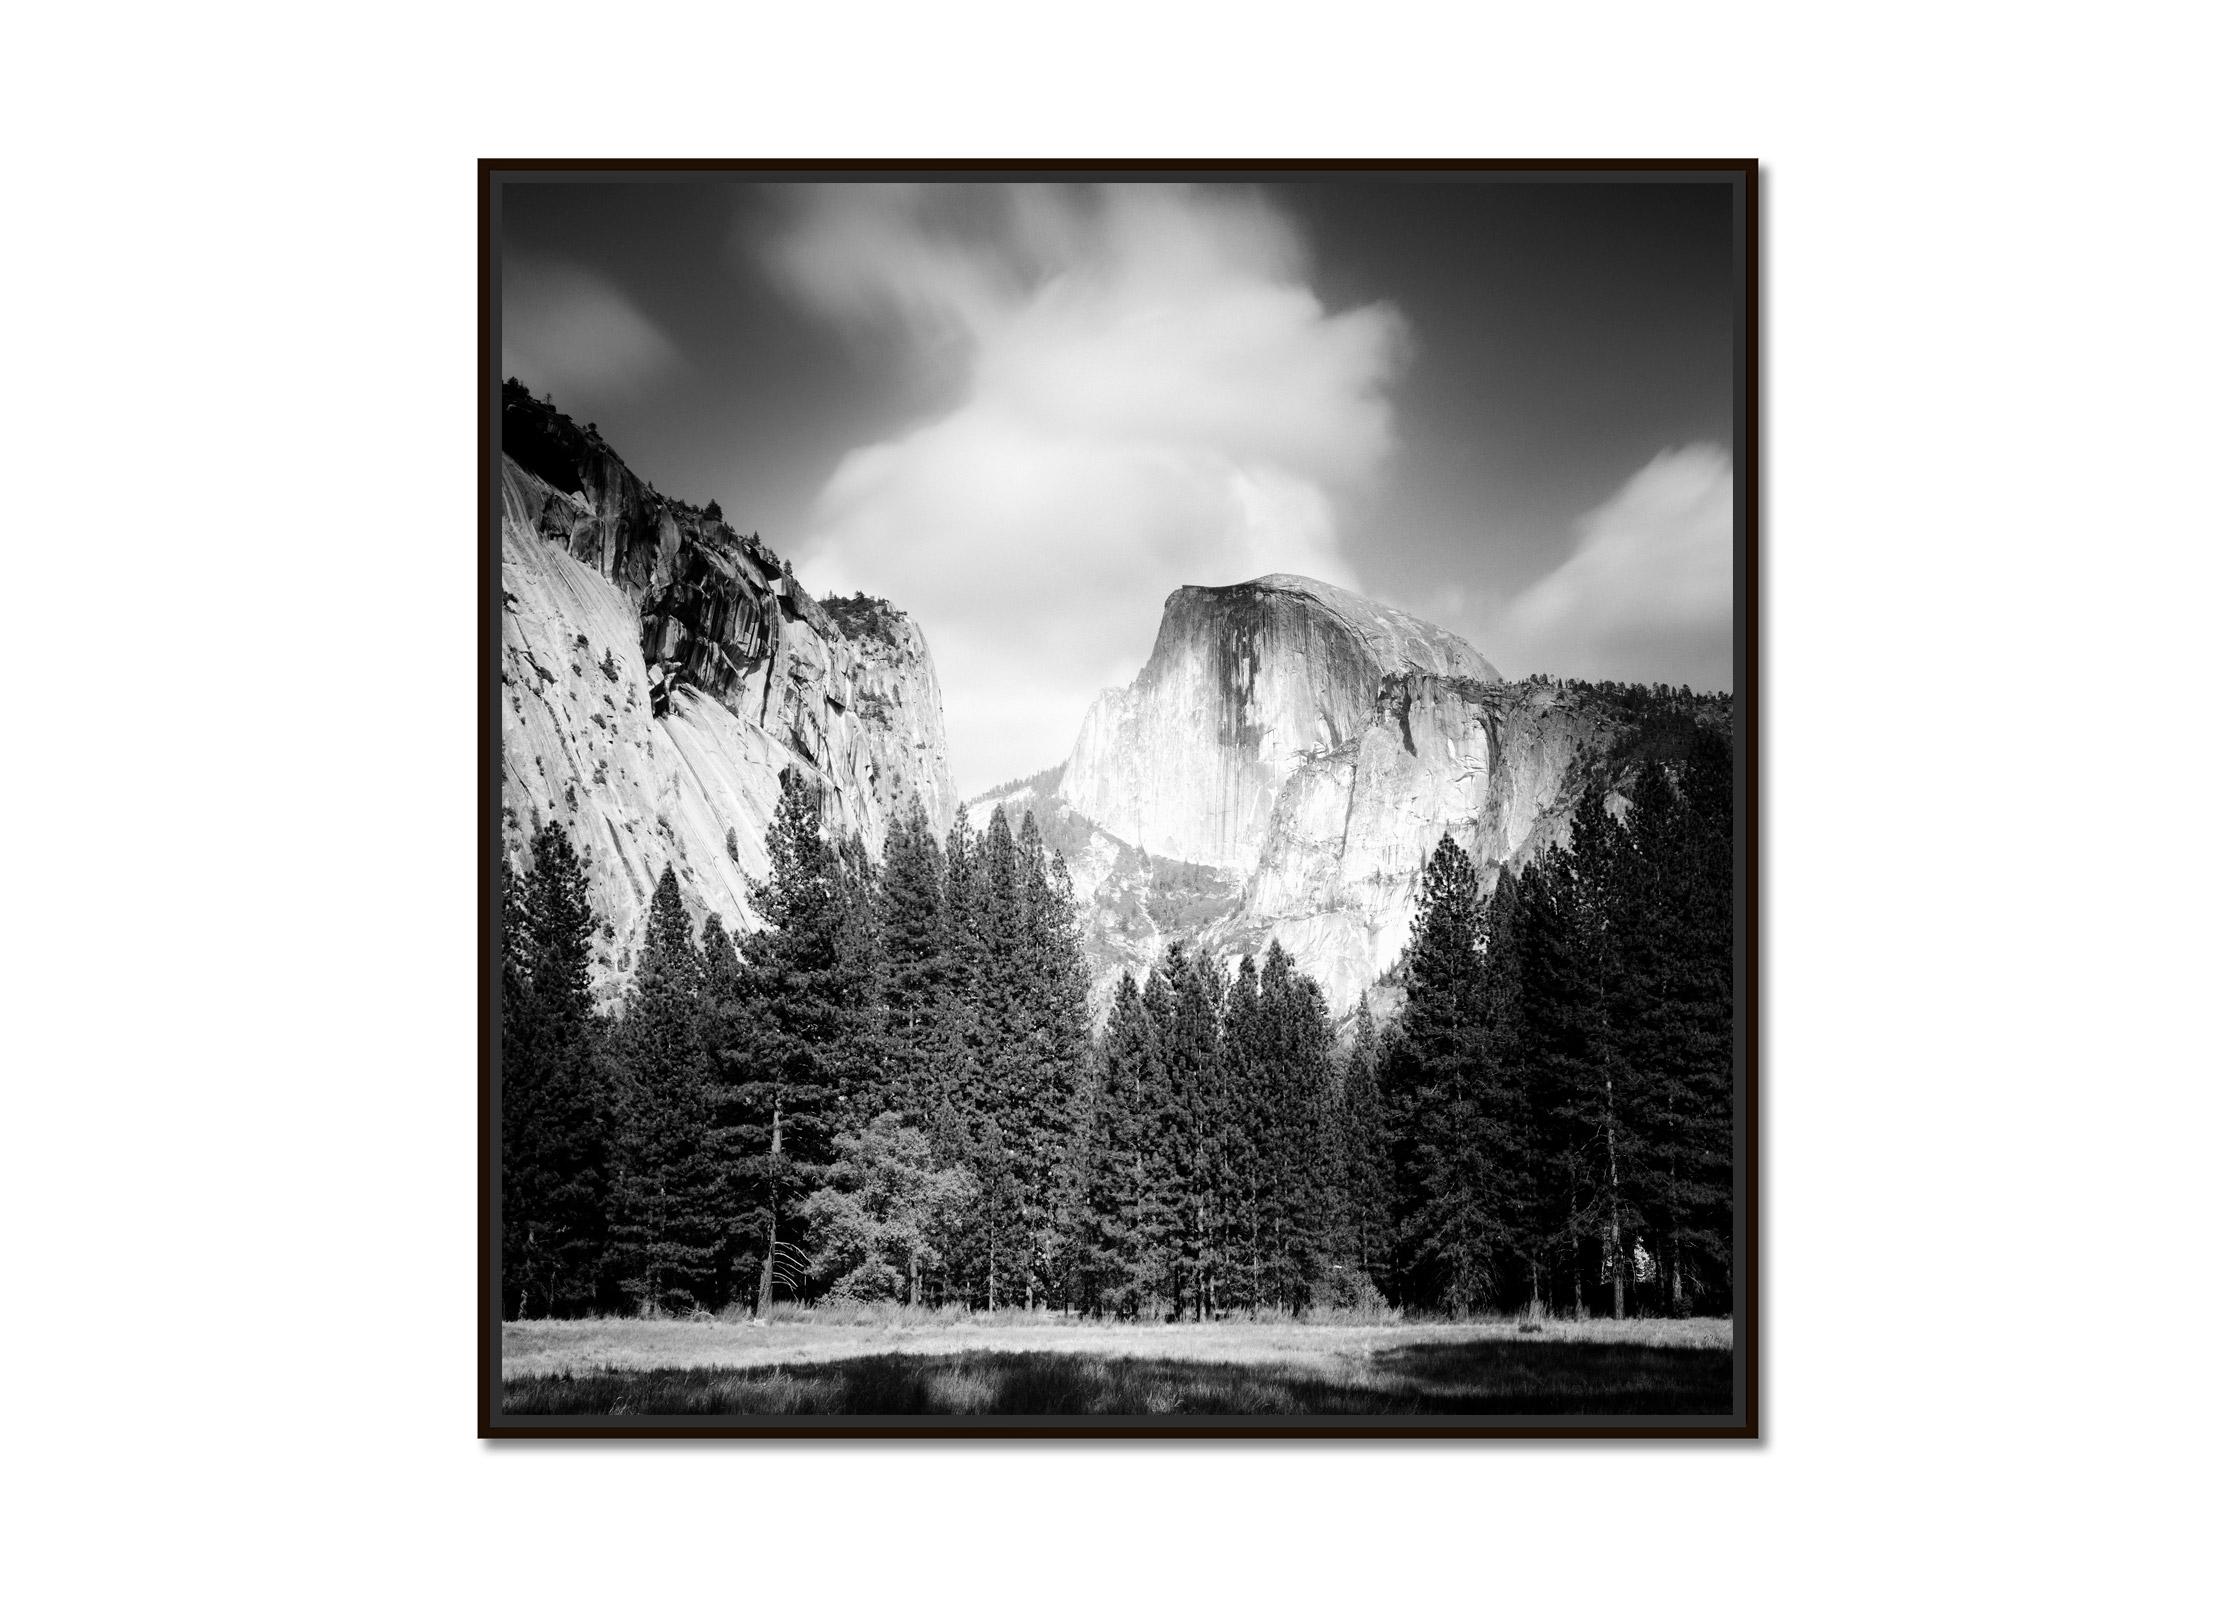 Halbkuppel, Yosemite National Park, USA, Schwarz-Weiß-Landschaftsfotografie – Photograph von Gerald Berghammer